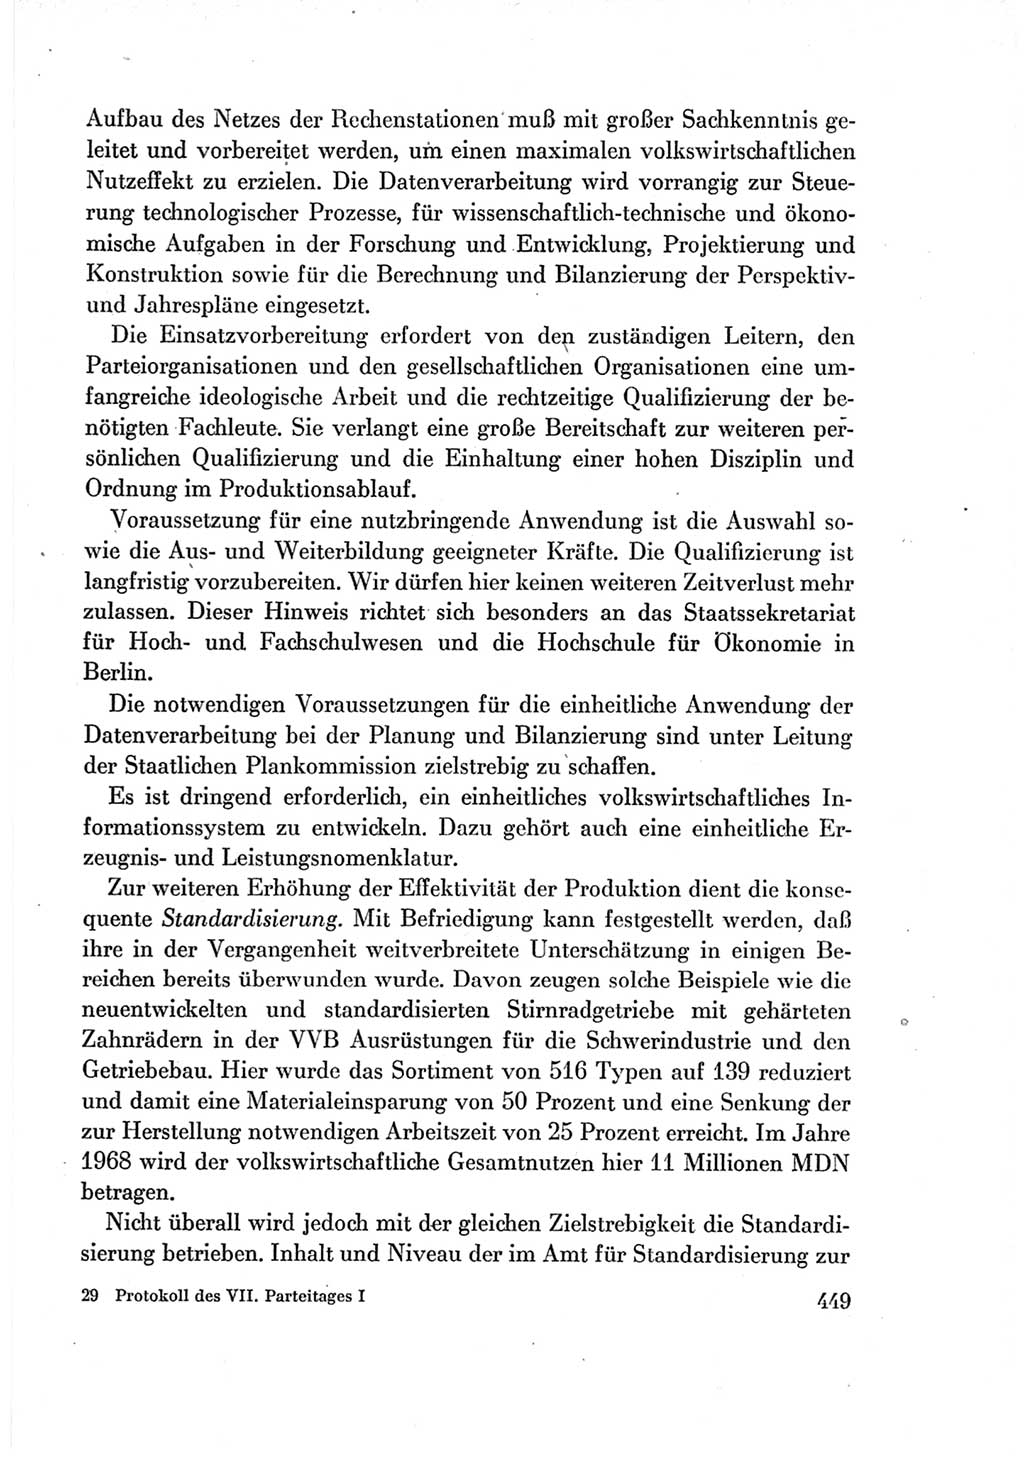 Protokoll der Verhandlungen des Ⅶ. Parteitages der Sozialistischen Einheitspartei Deutschlands (SED) [Deutsche Demokratische Republik (DDR)] 1967, Band Ⅰ, Seite 449 (Prot. Verh. Ⅶ. PT SED DDR 1967, Bd. Ⅰ, S. 449)